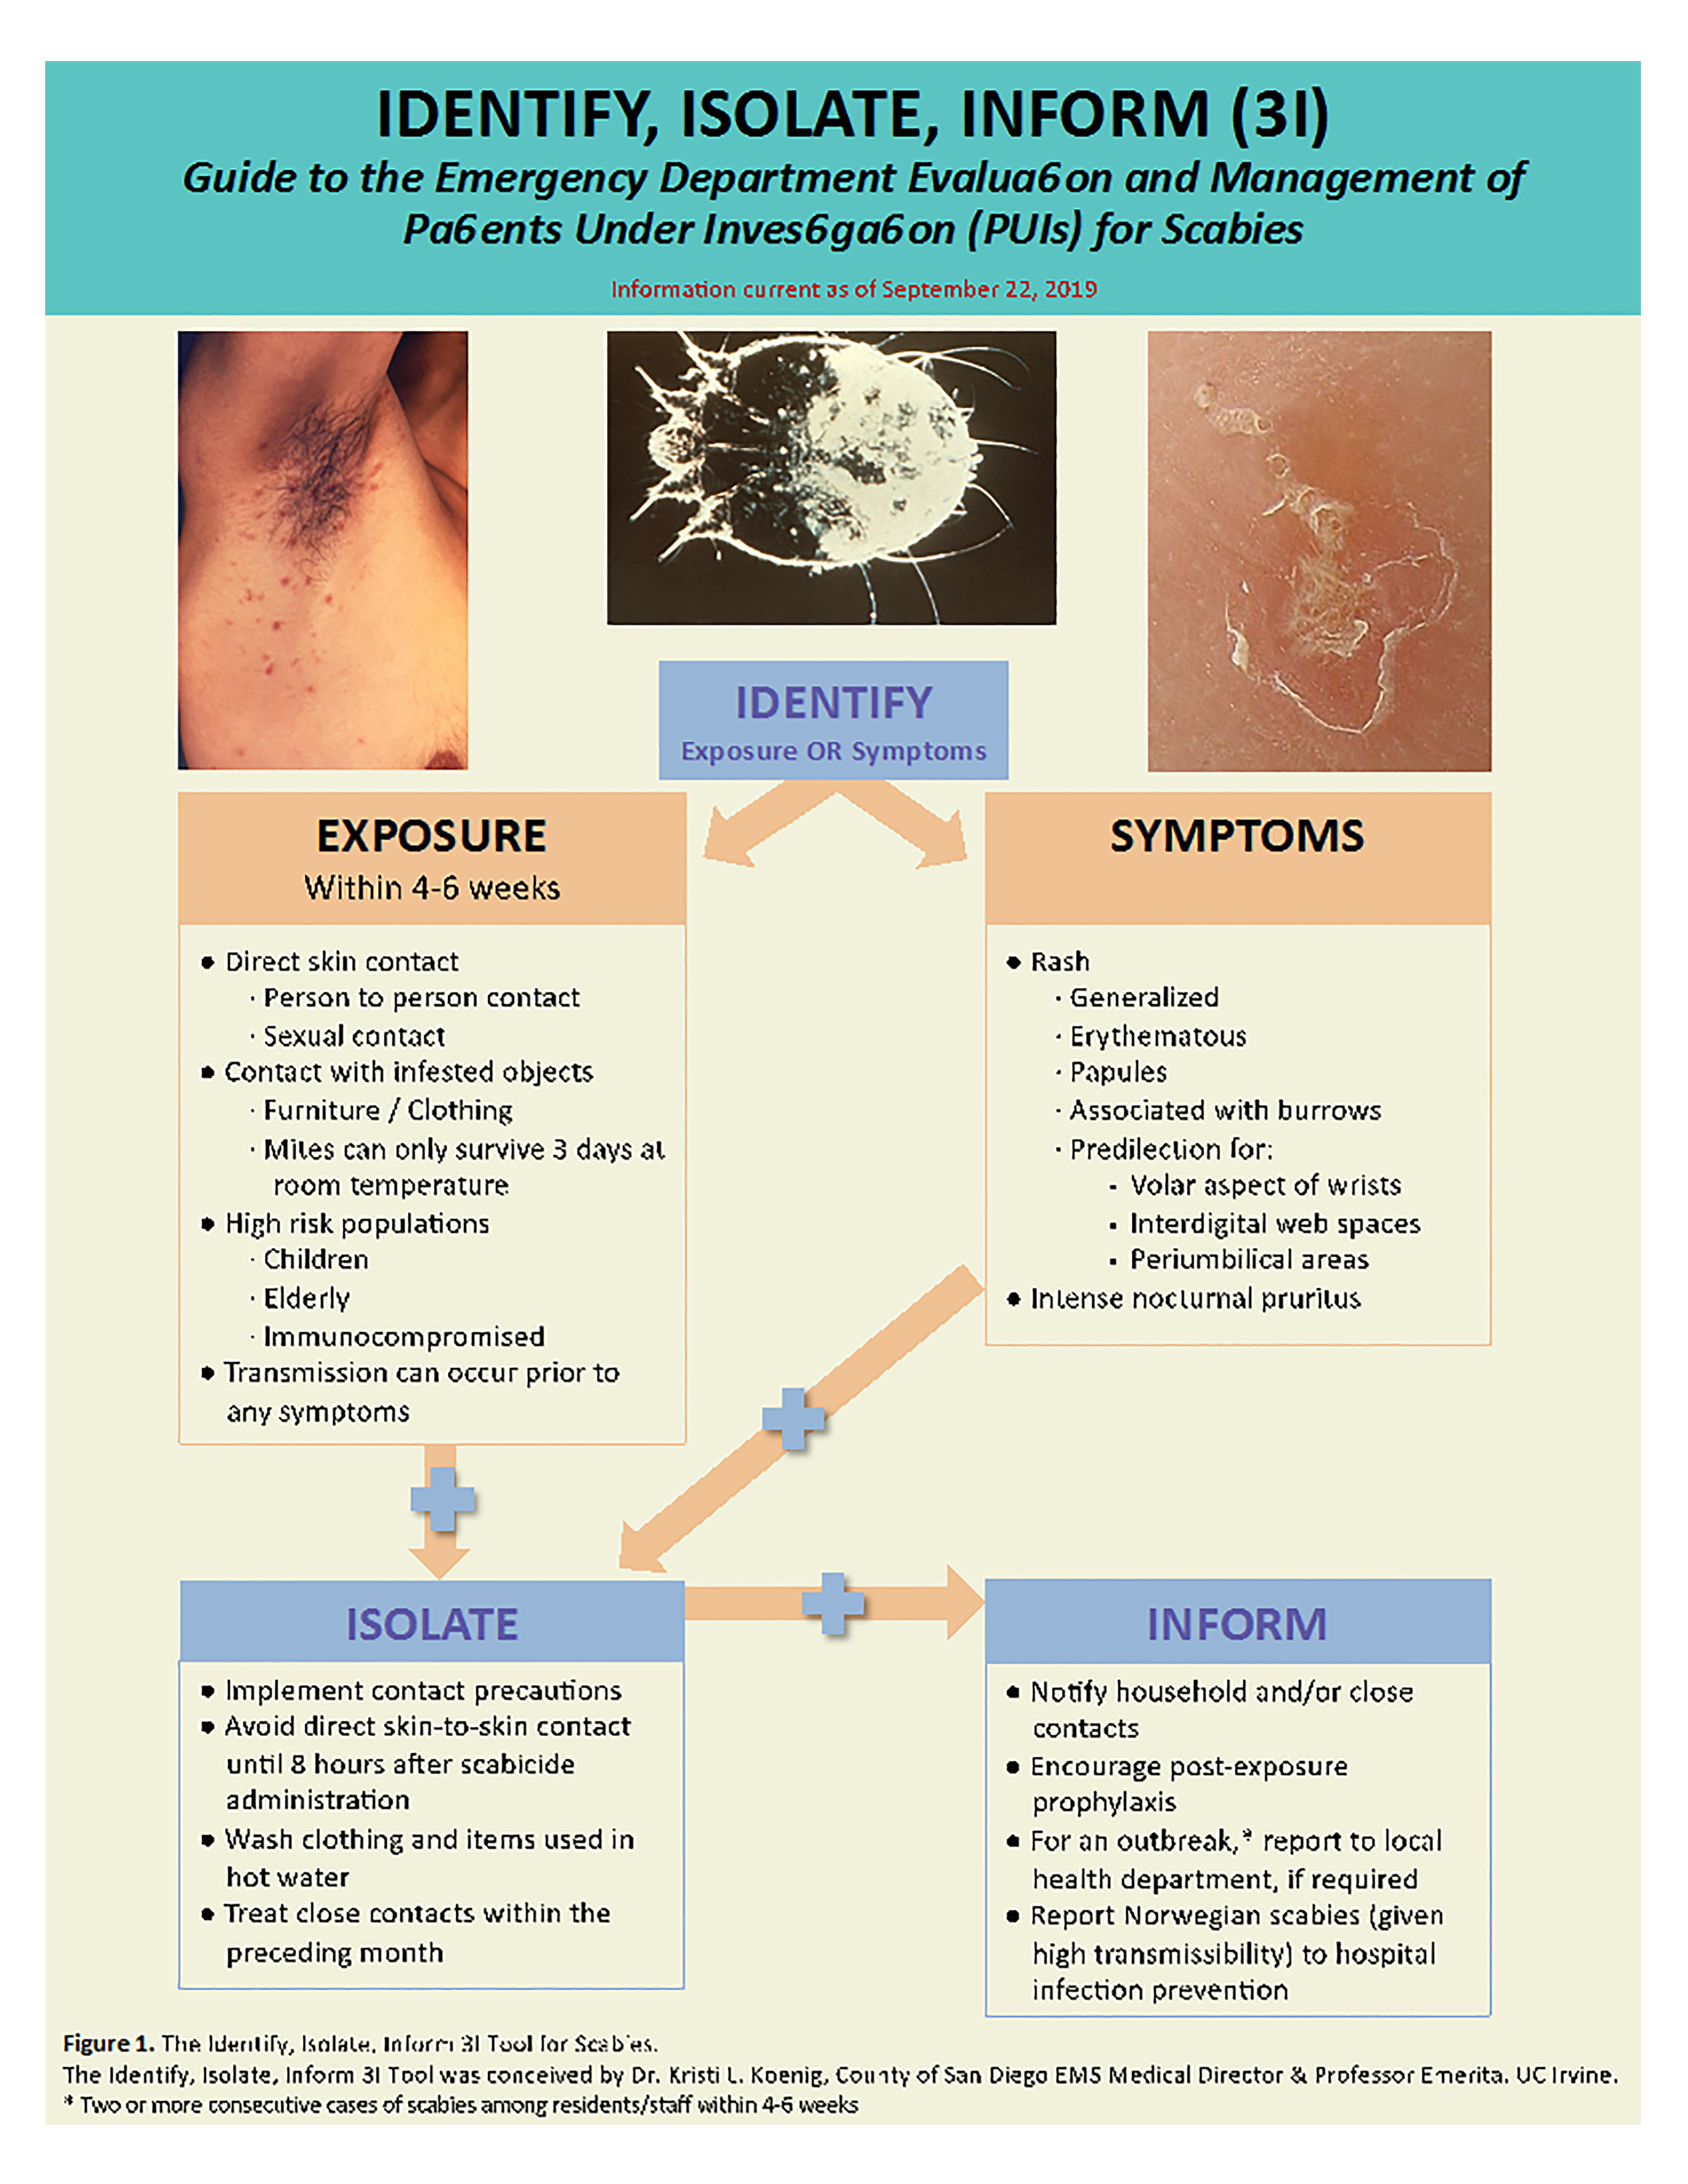 Scabies: Causes, Symptoms, Diagnosis, Treatment & Prevention